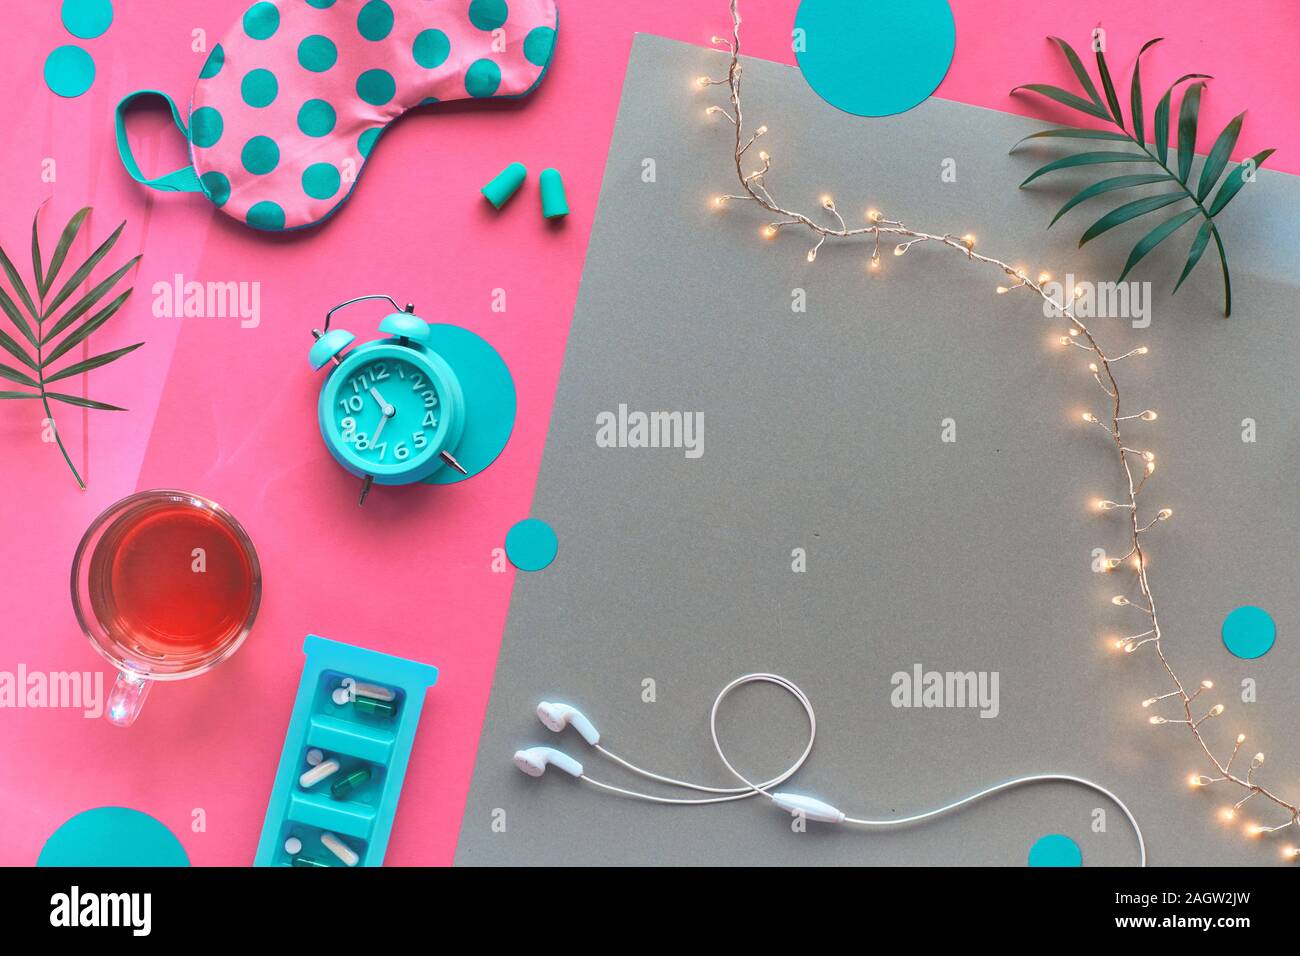 Gesunder Schlaf kreatives Konzept. Schlafmaske, Wecker, Kopfhörer,  Ohrhörer, Kaffee und Pillen. Split rosa und Handwerk Papier Hintergrund mit  Licht Stockfotografie - Alamy